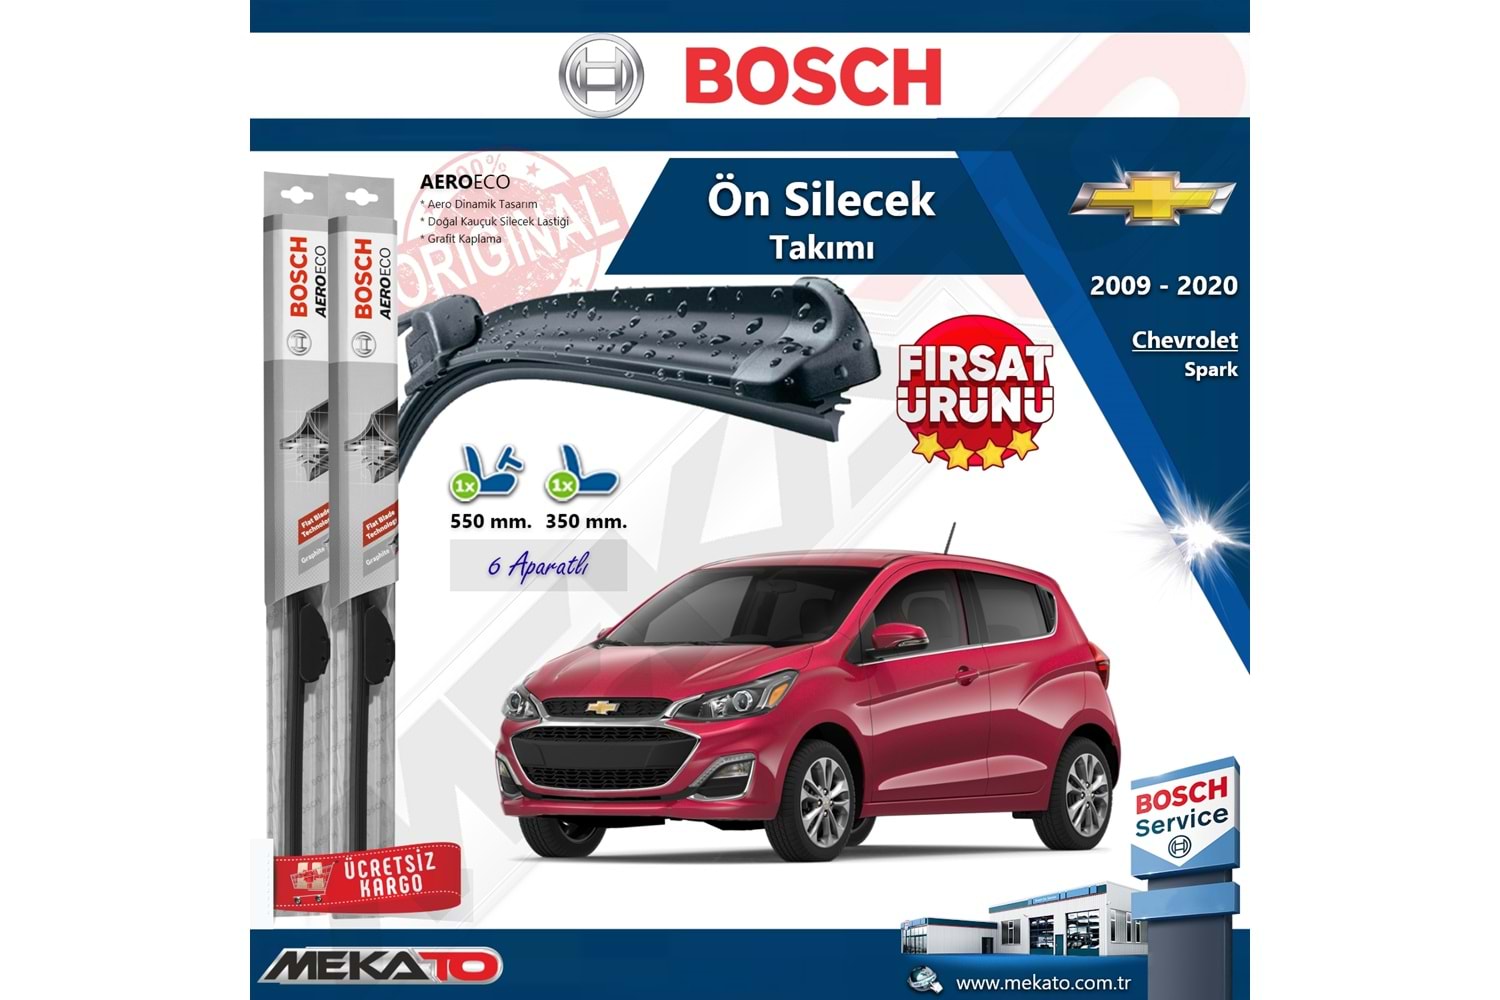 Chevrolet Spark Ön Silecek Takımı Bosch Aero Eco 2009-2020